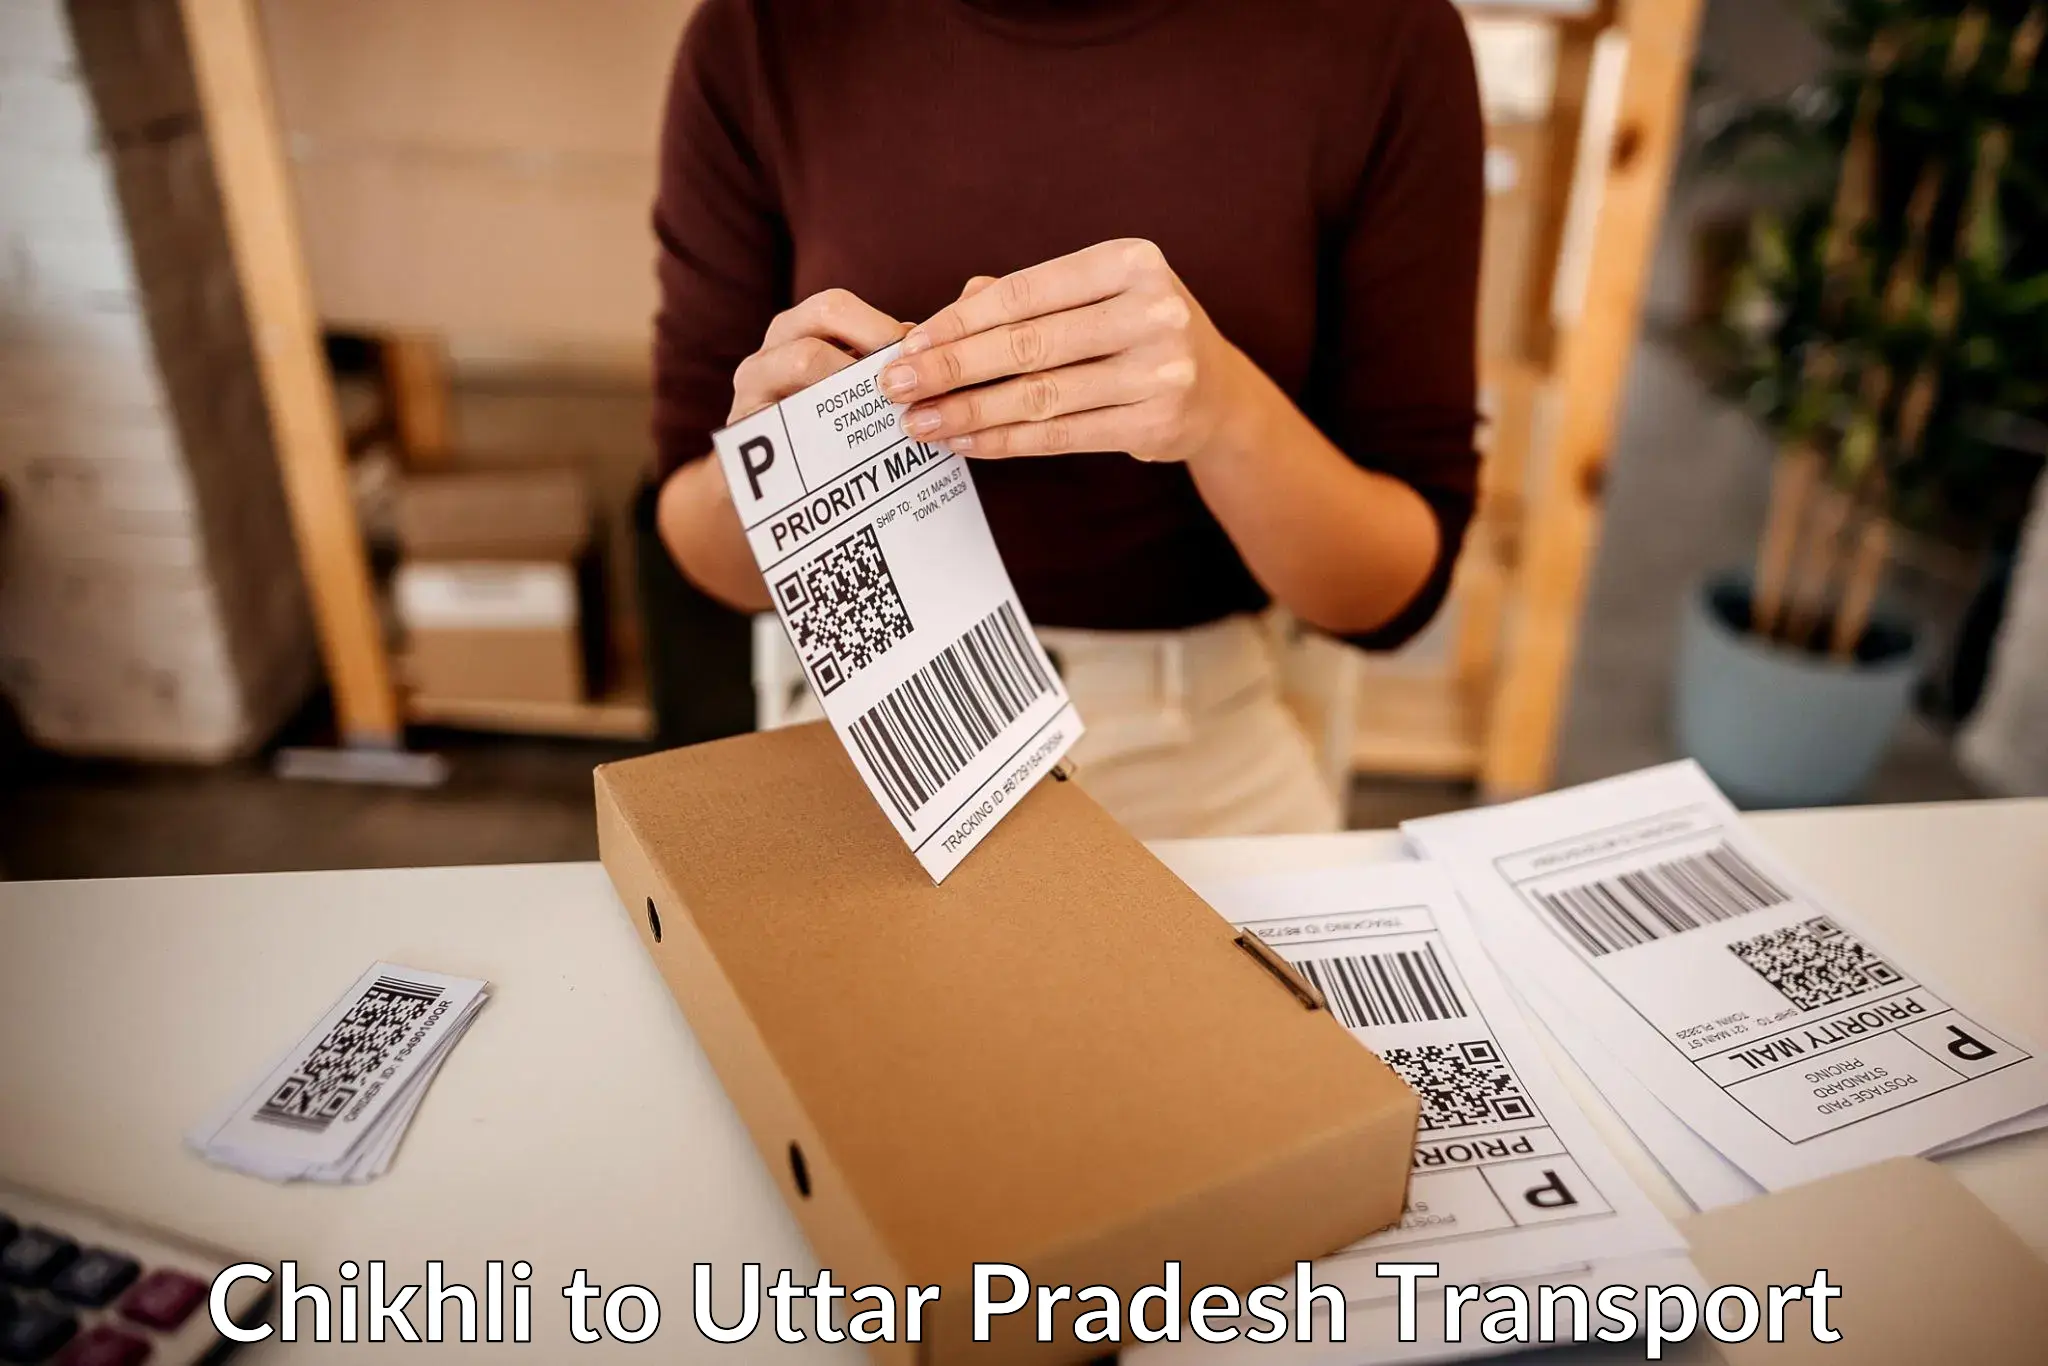 Online transport service Chikhli to Uttar Pradesh